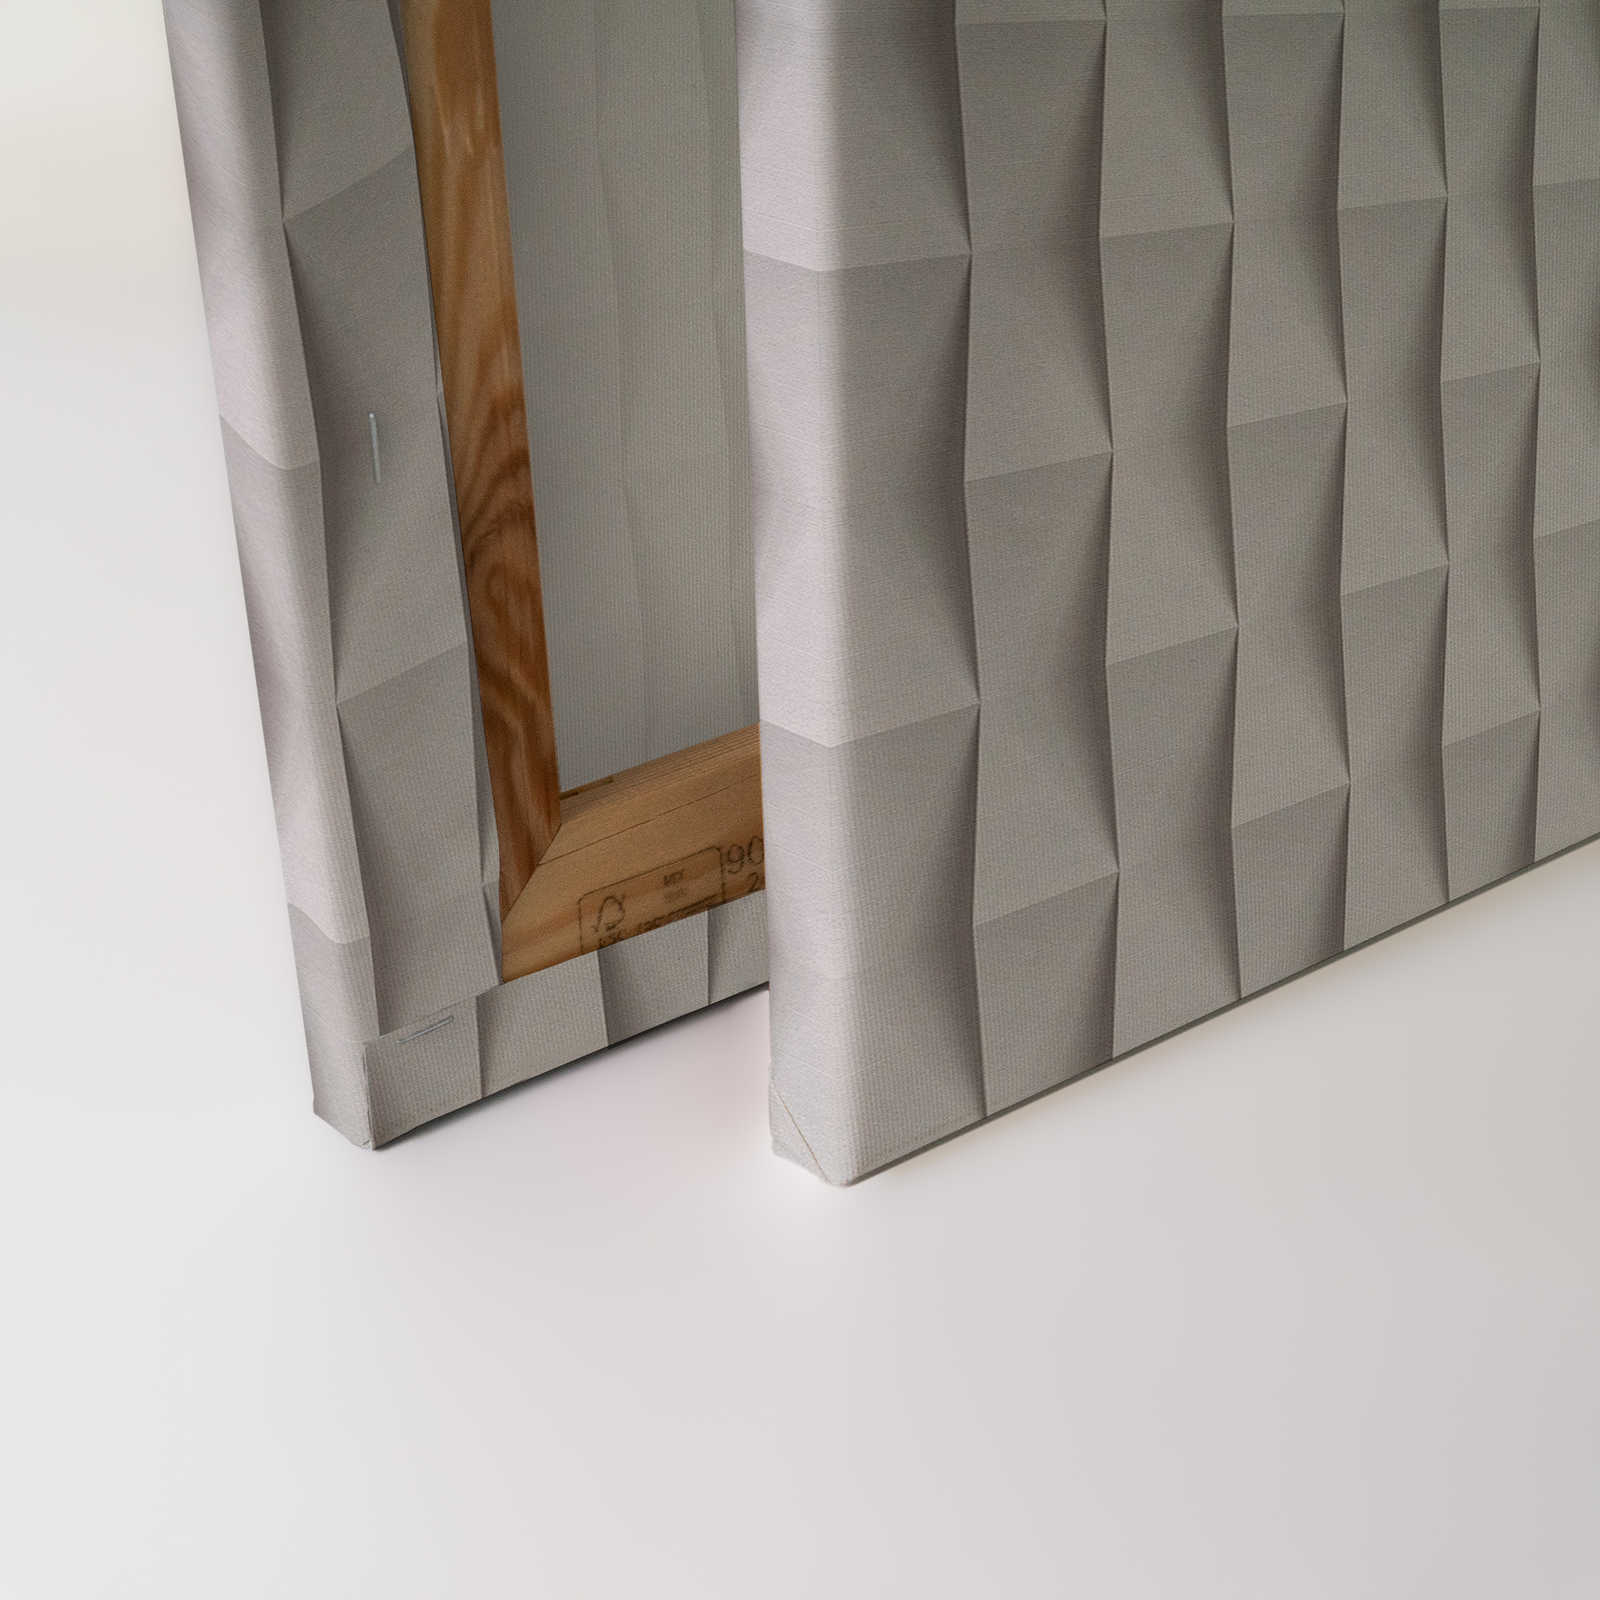             Paper House 2 - 3D toile papier pliage design avec ombres portées - 1,20 m x 0,80 m
        